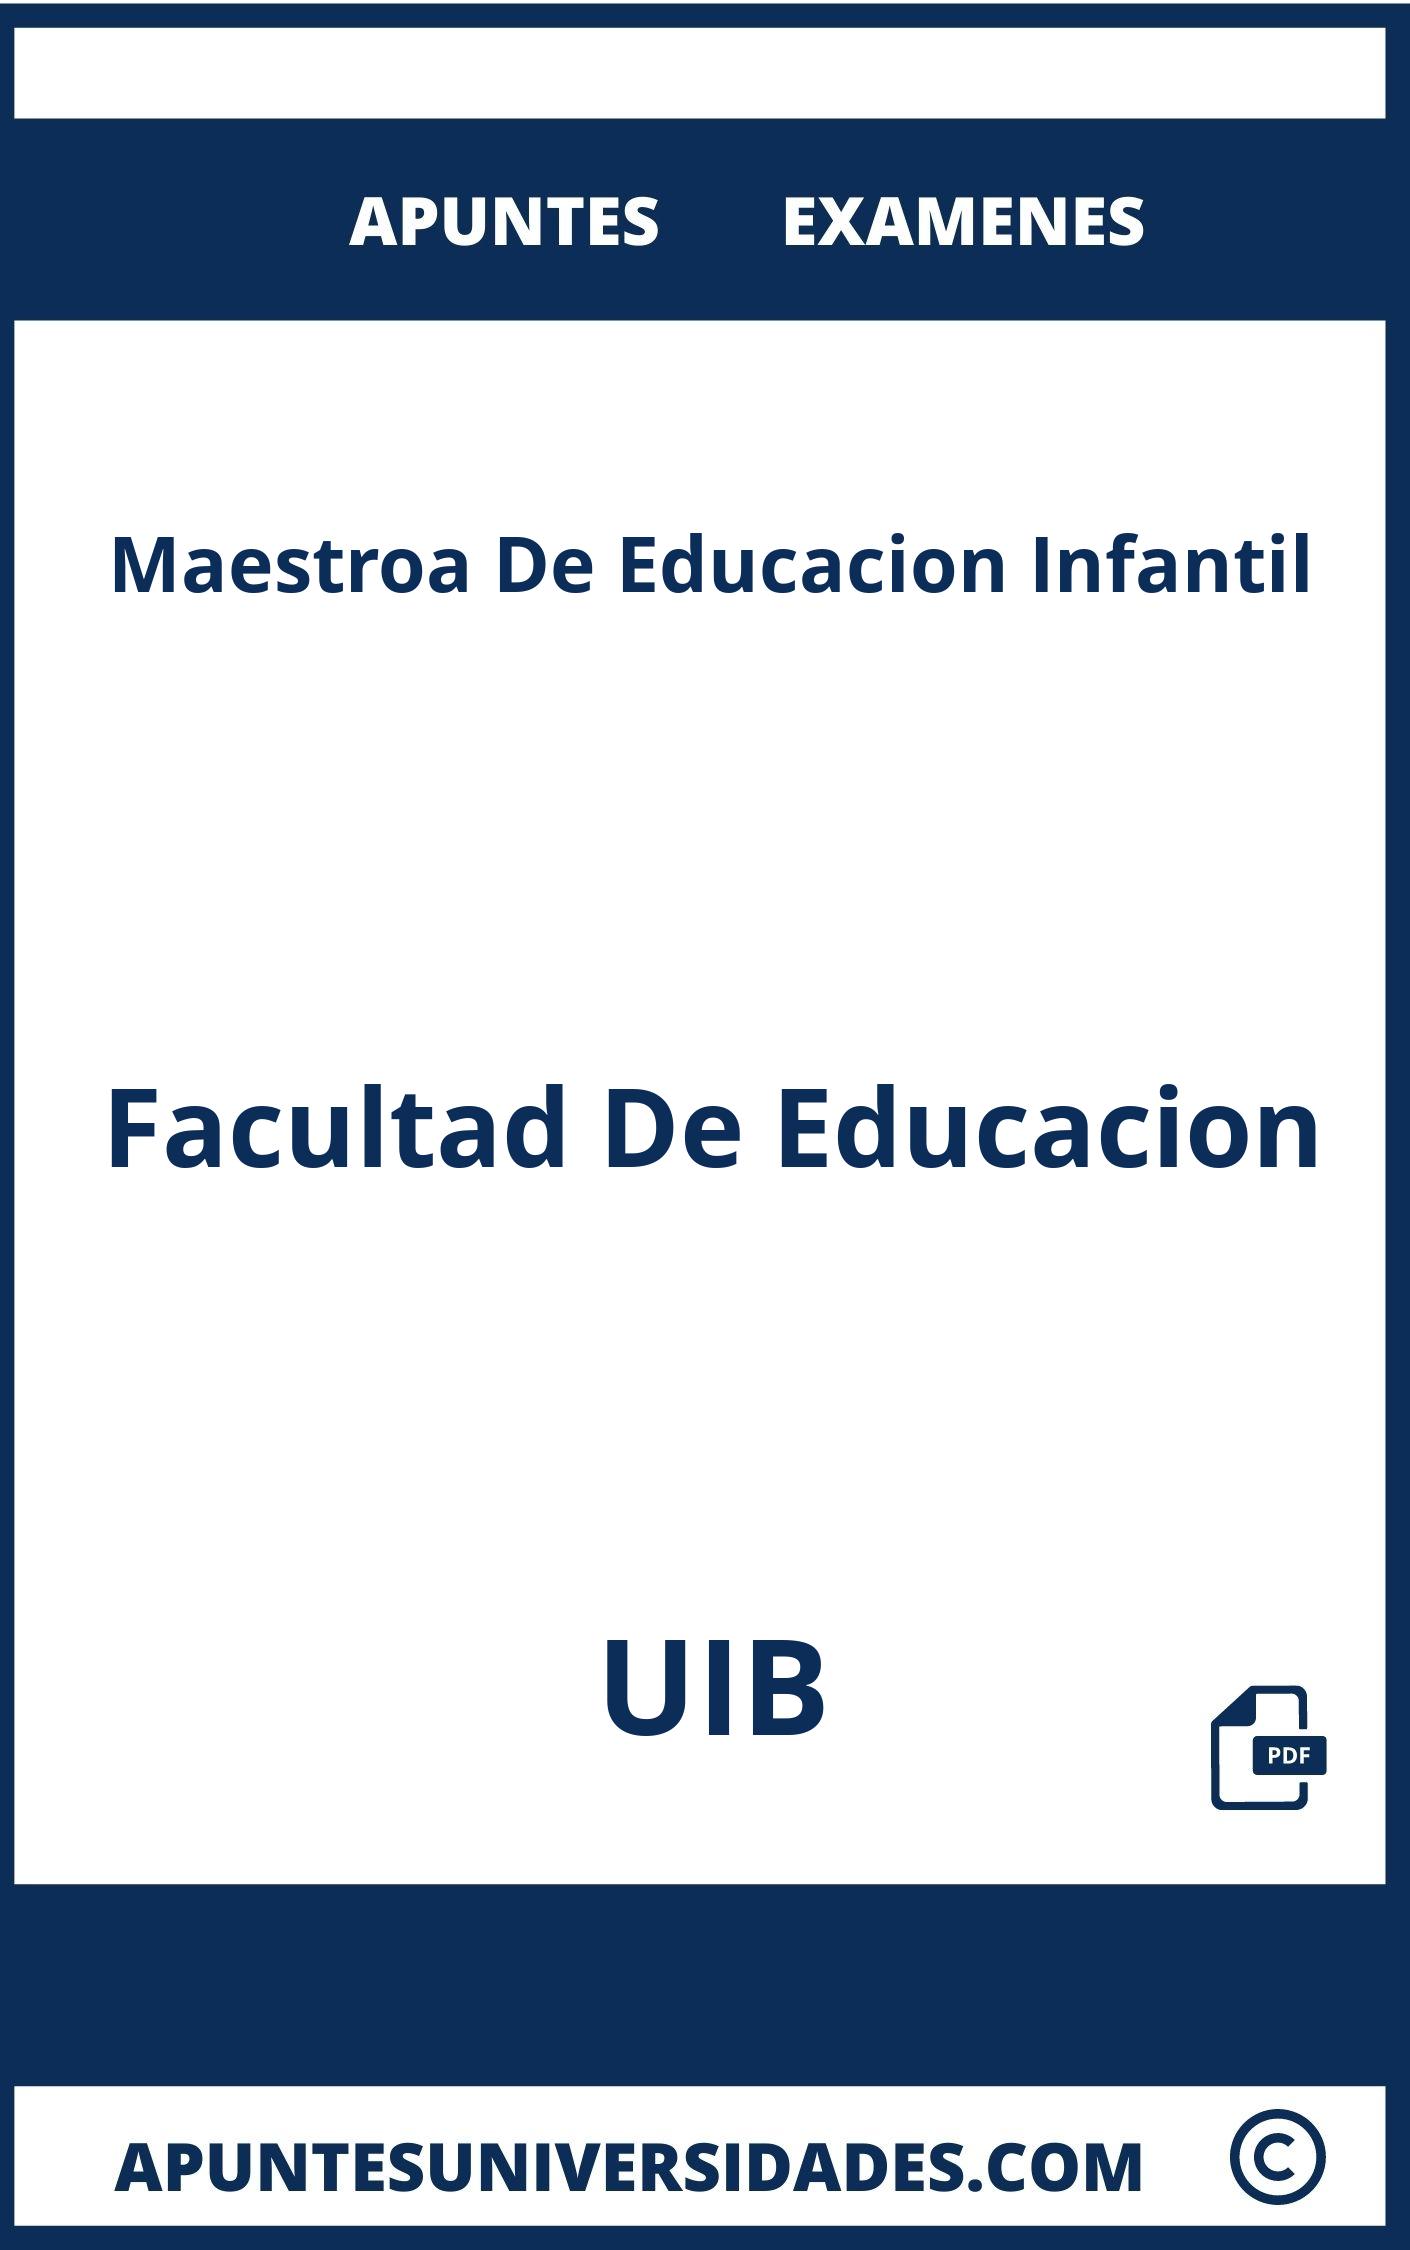 Apuntes y Examenes Maestroa De Educacion Infantil UIB